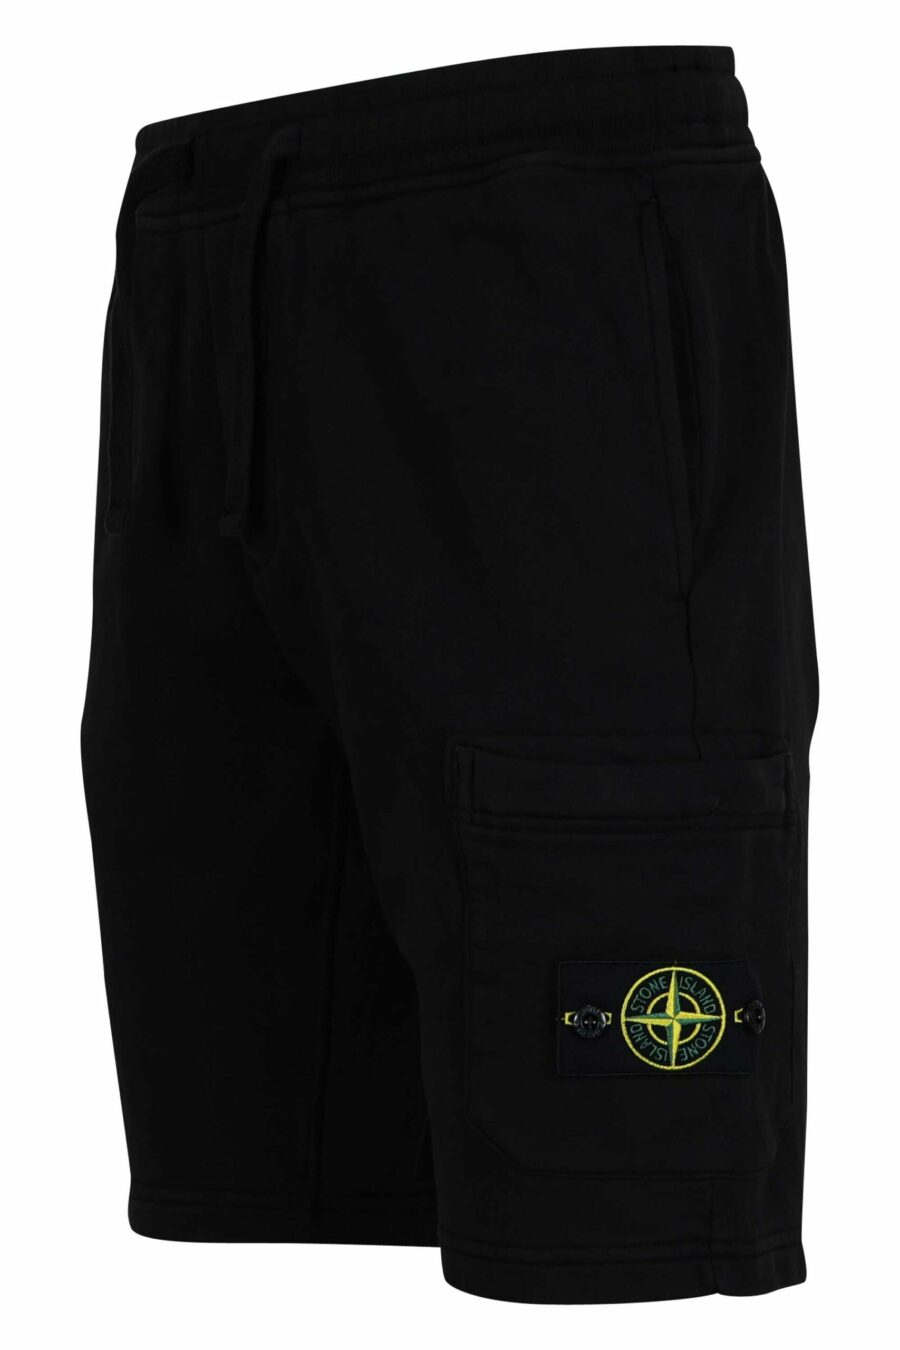 Pantalón de chándal corto negro con logo parche brújula - 8052572852916 1 scaled